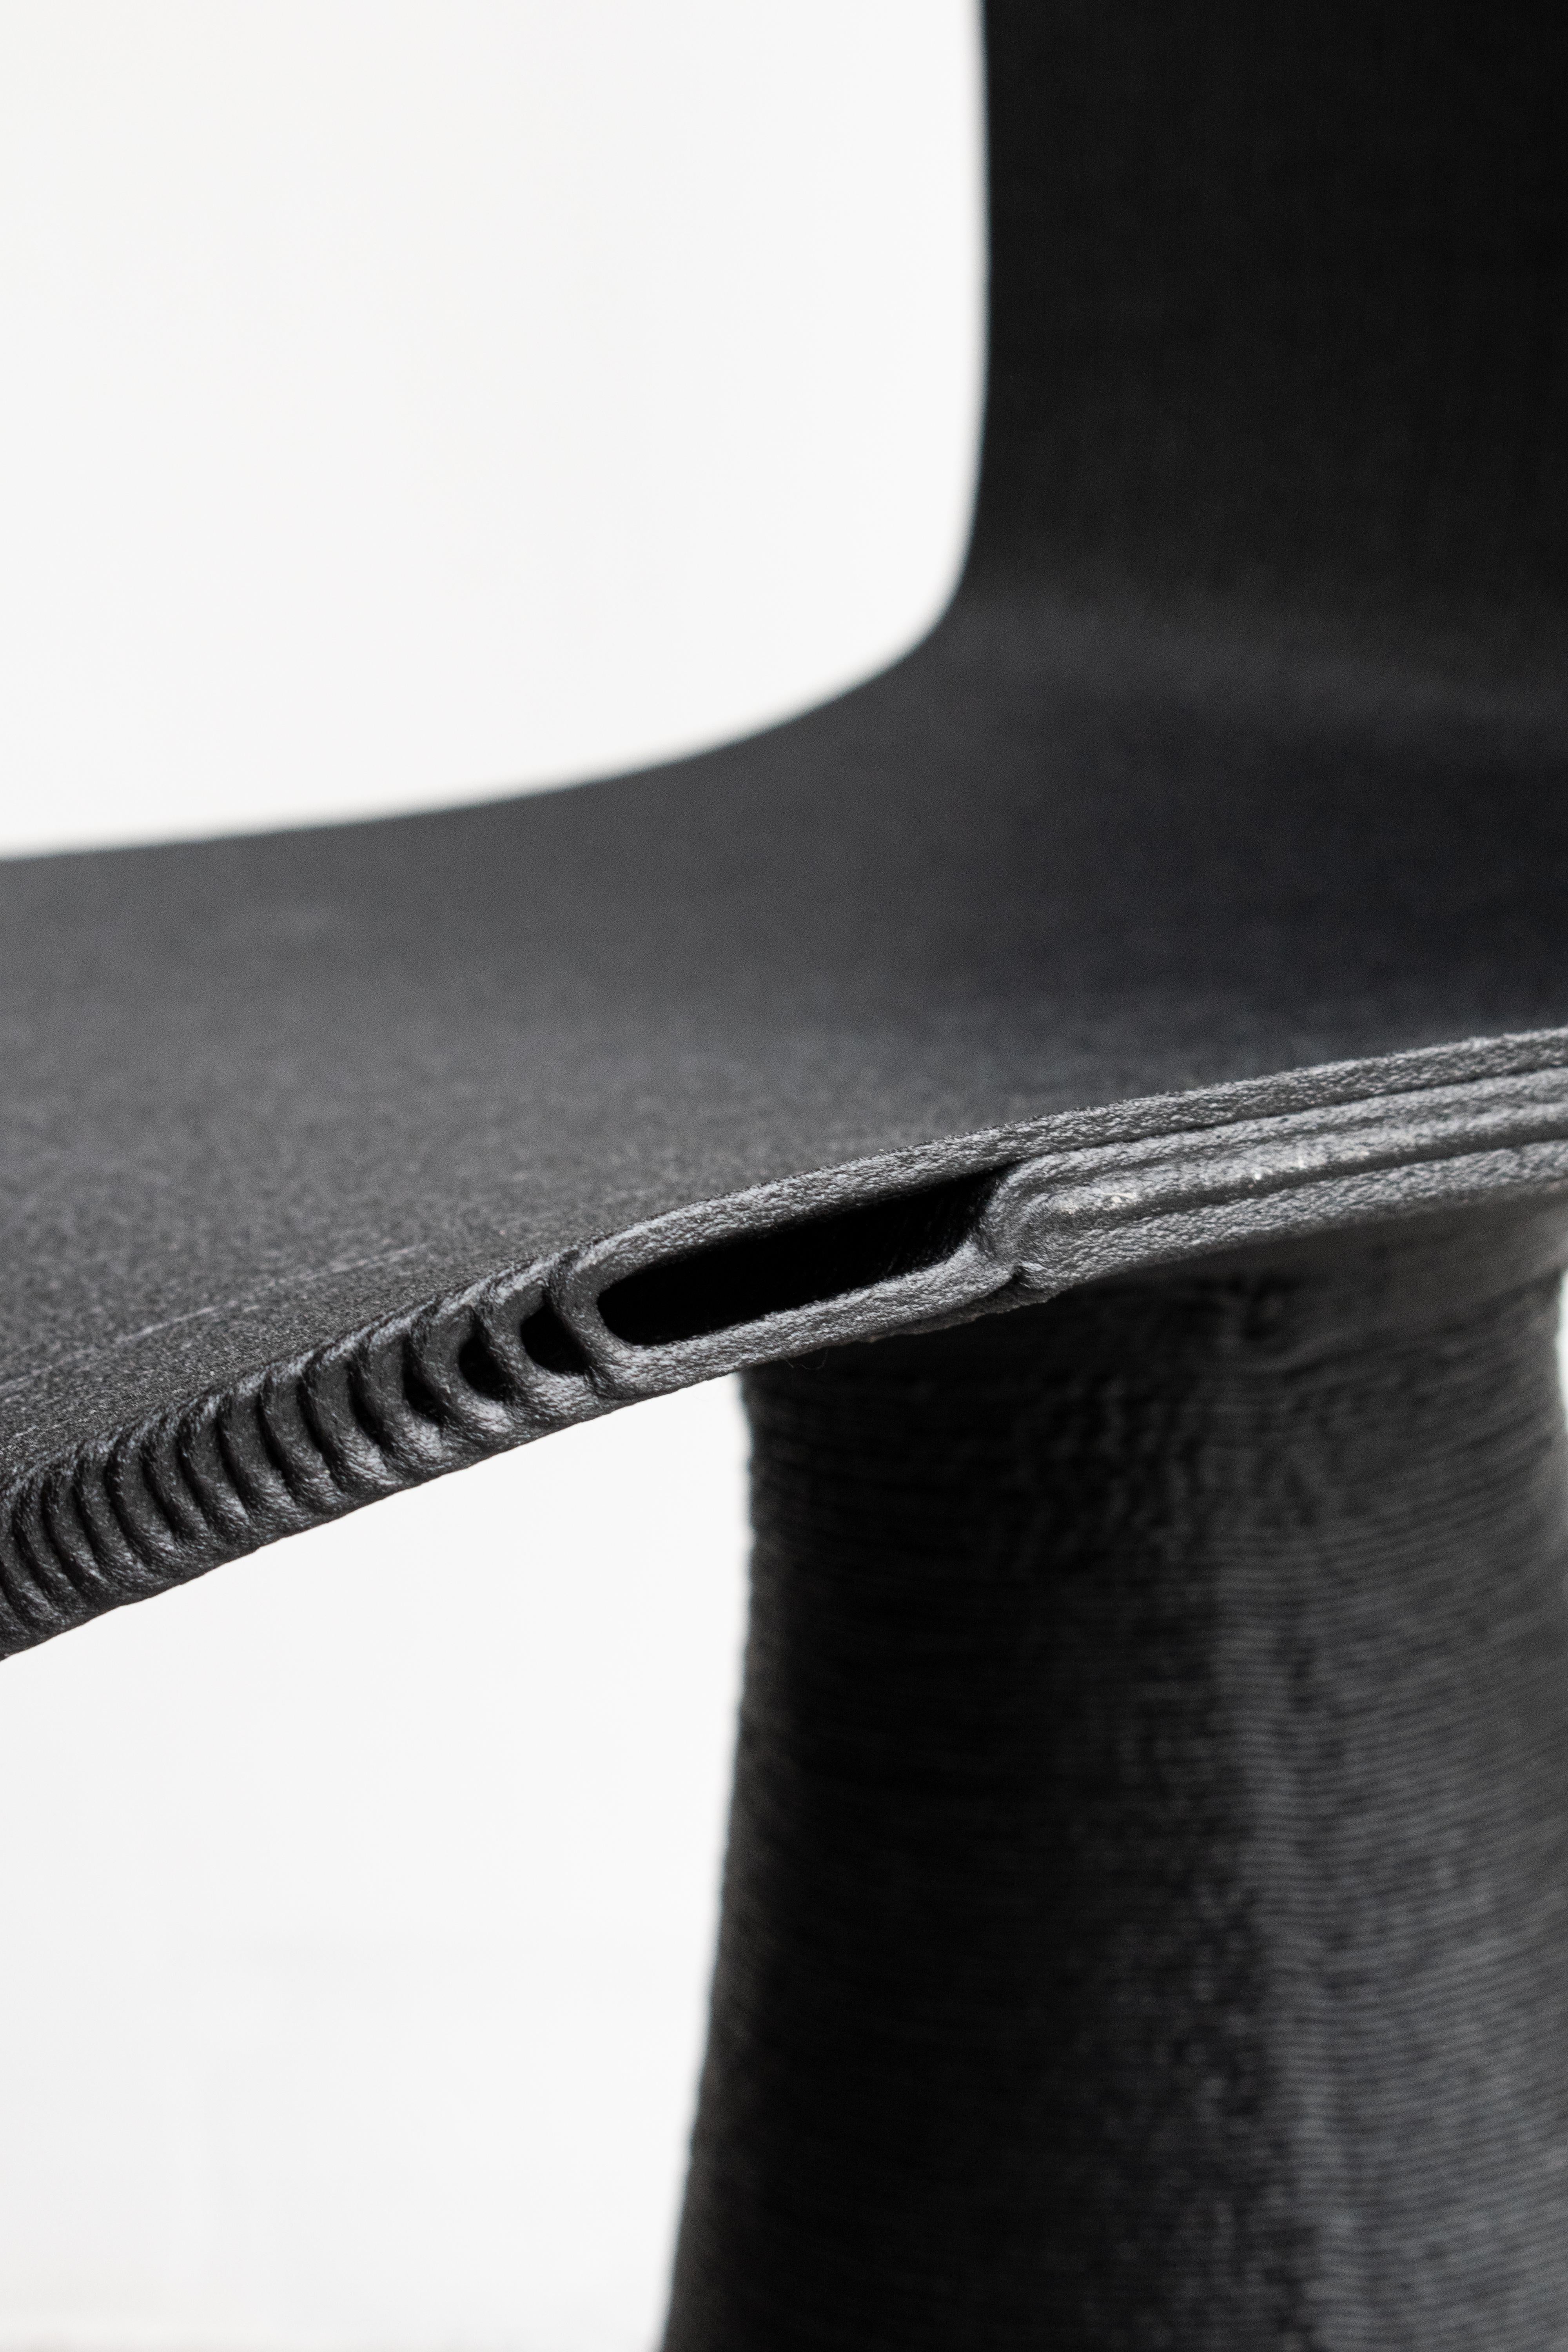 Chaise SoHo

Fabrication de haute technologie avec une touche humaine

La chaise Soho représente symboliquement toutes les valeurs de la marque Elli. Des lignes épurées, des références esthétiques à l'historicité du design italien mais avec une